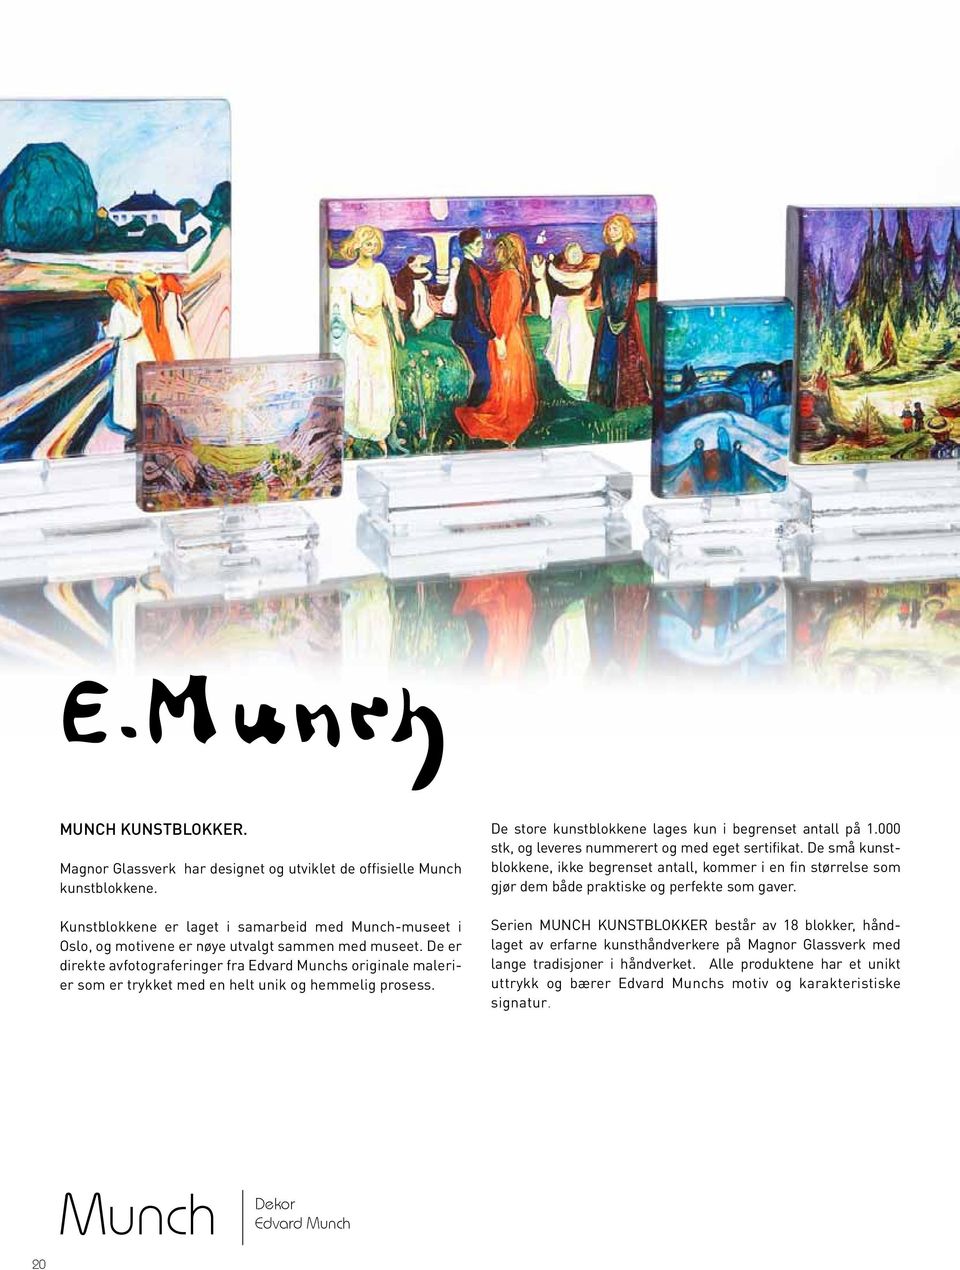 De er direkte avfotograferinger fra Edvard Munchs originale malerier som er trykket med en helt unik og hemmelig prosess. De store kunstblokkene lages kun i begrenset antall på 1.